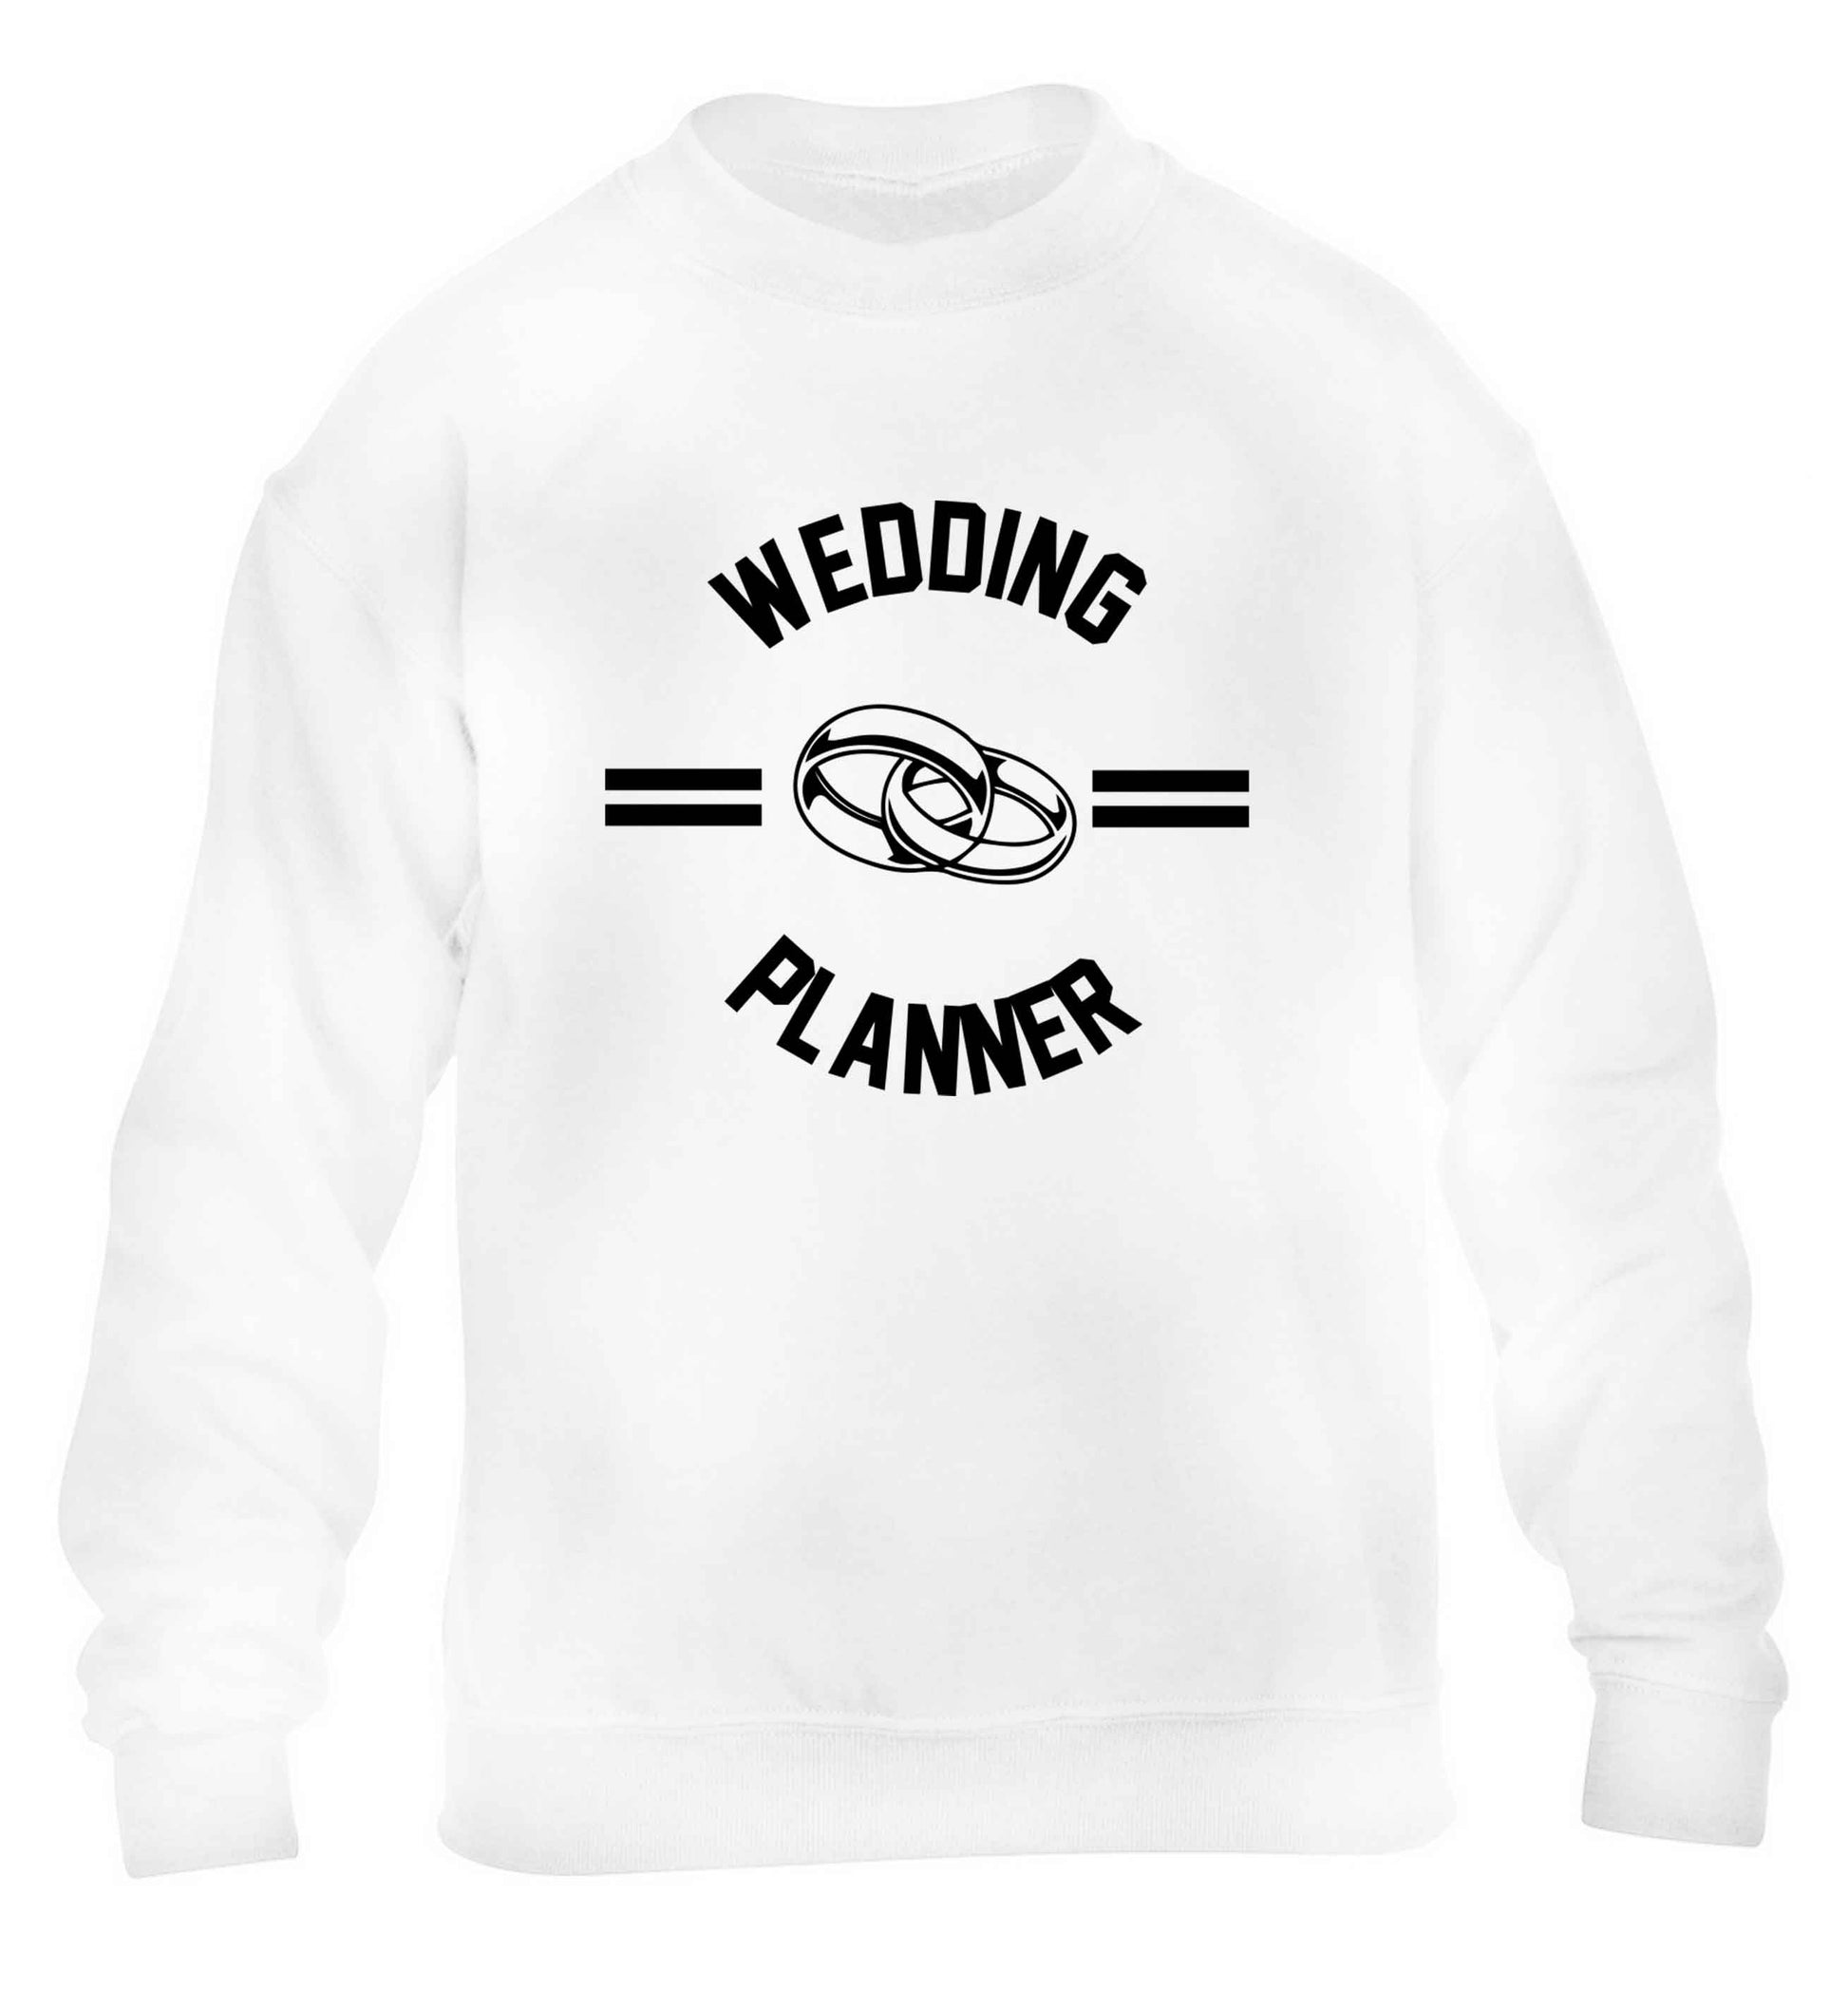 Wedding planner children's white sweater 12-13 Years